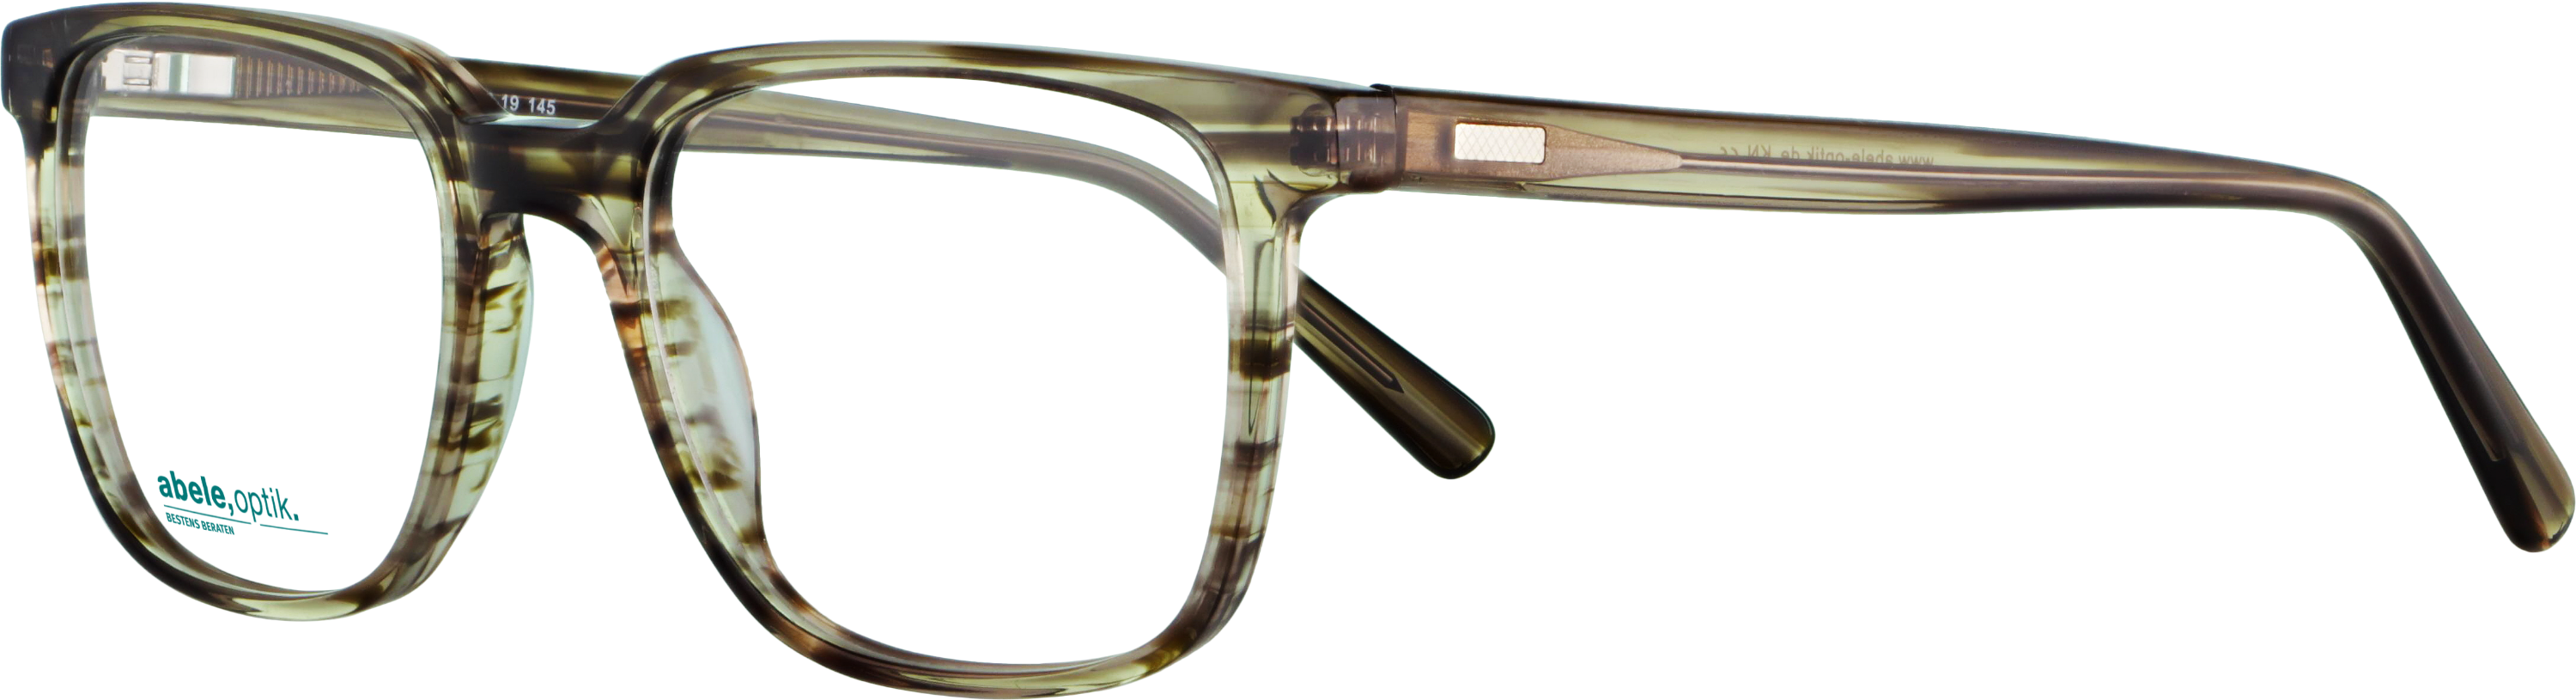 Das Bild zeigt die Korrektionsbrille 141441 von der Marke Abele Optik in braun.